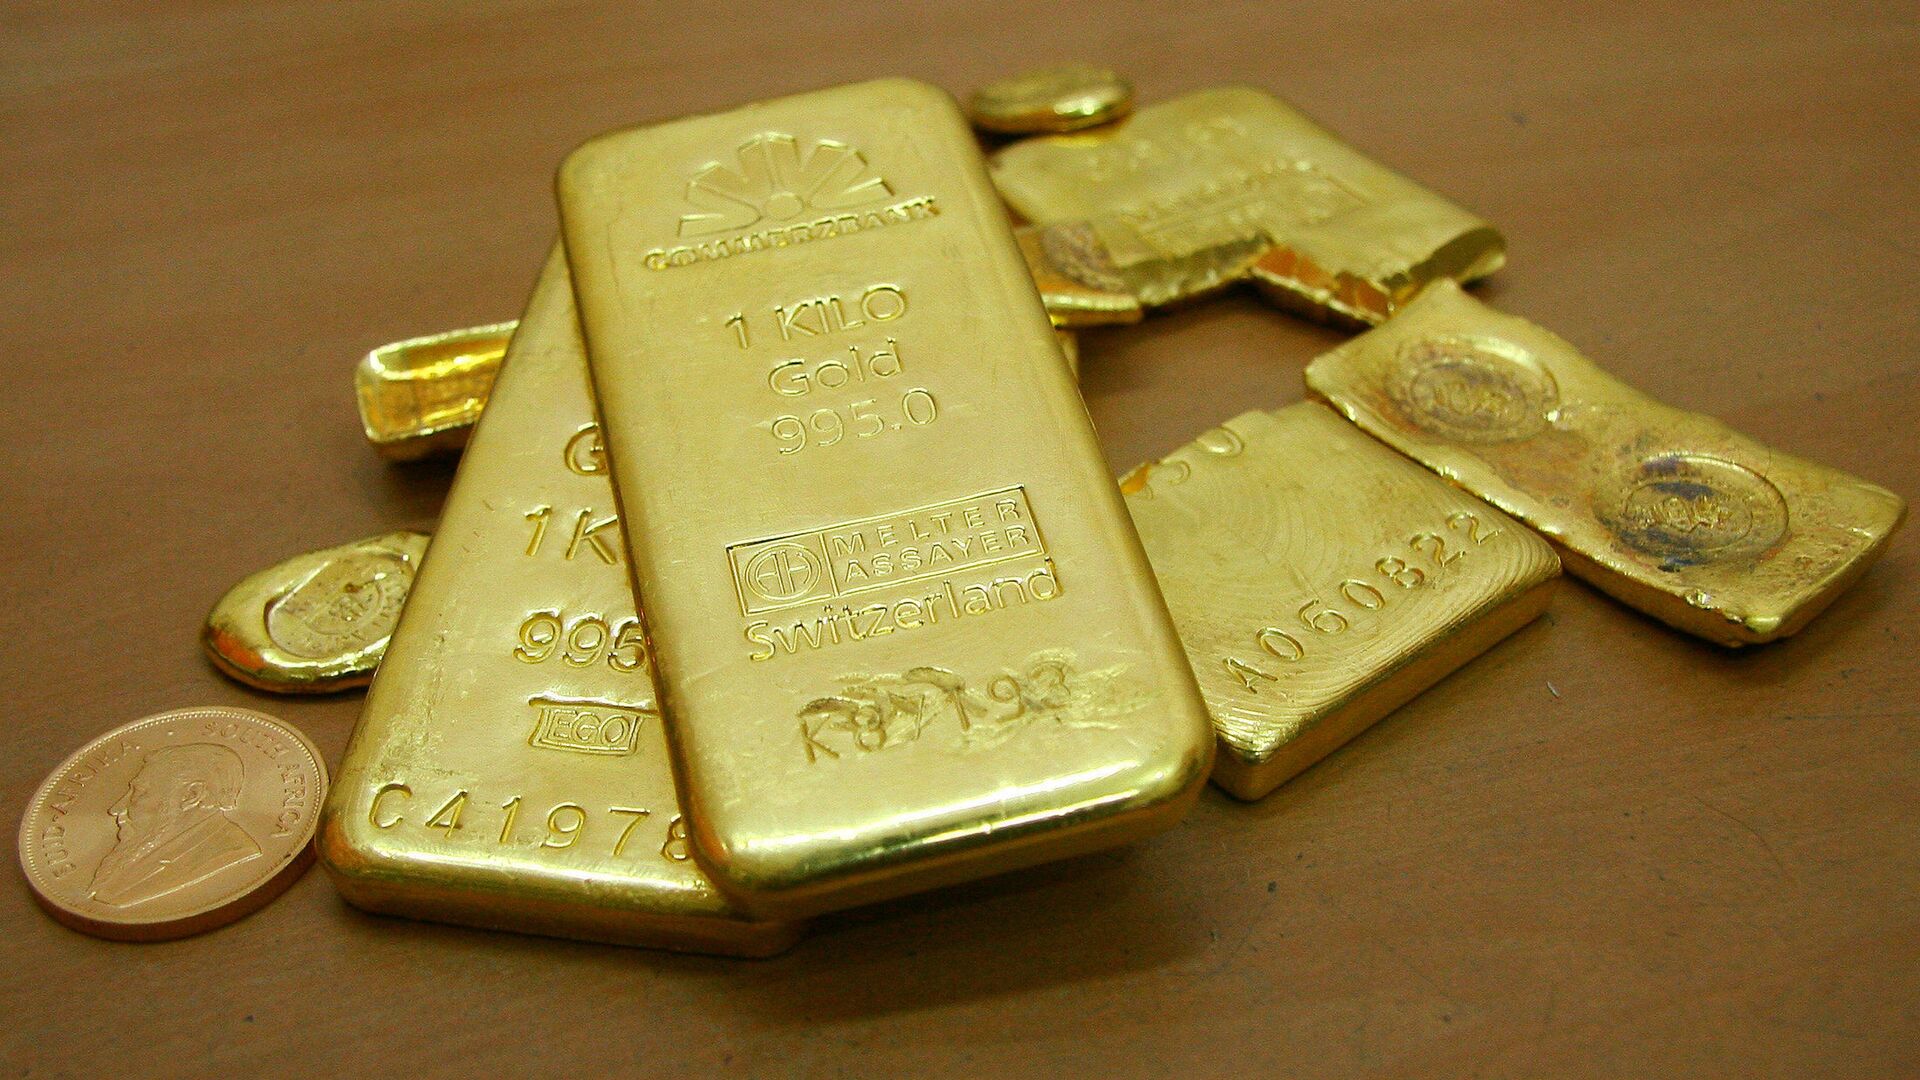 كم سعر الذهب اليوم في السعودية بيع وشراء عيار 21